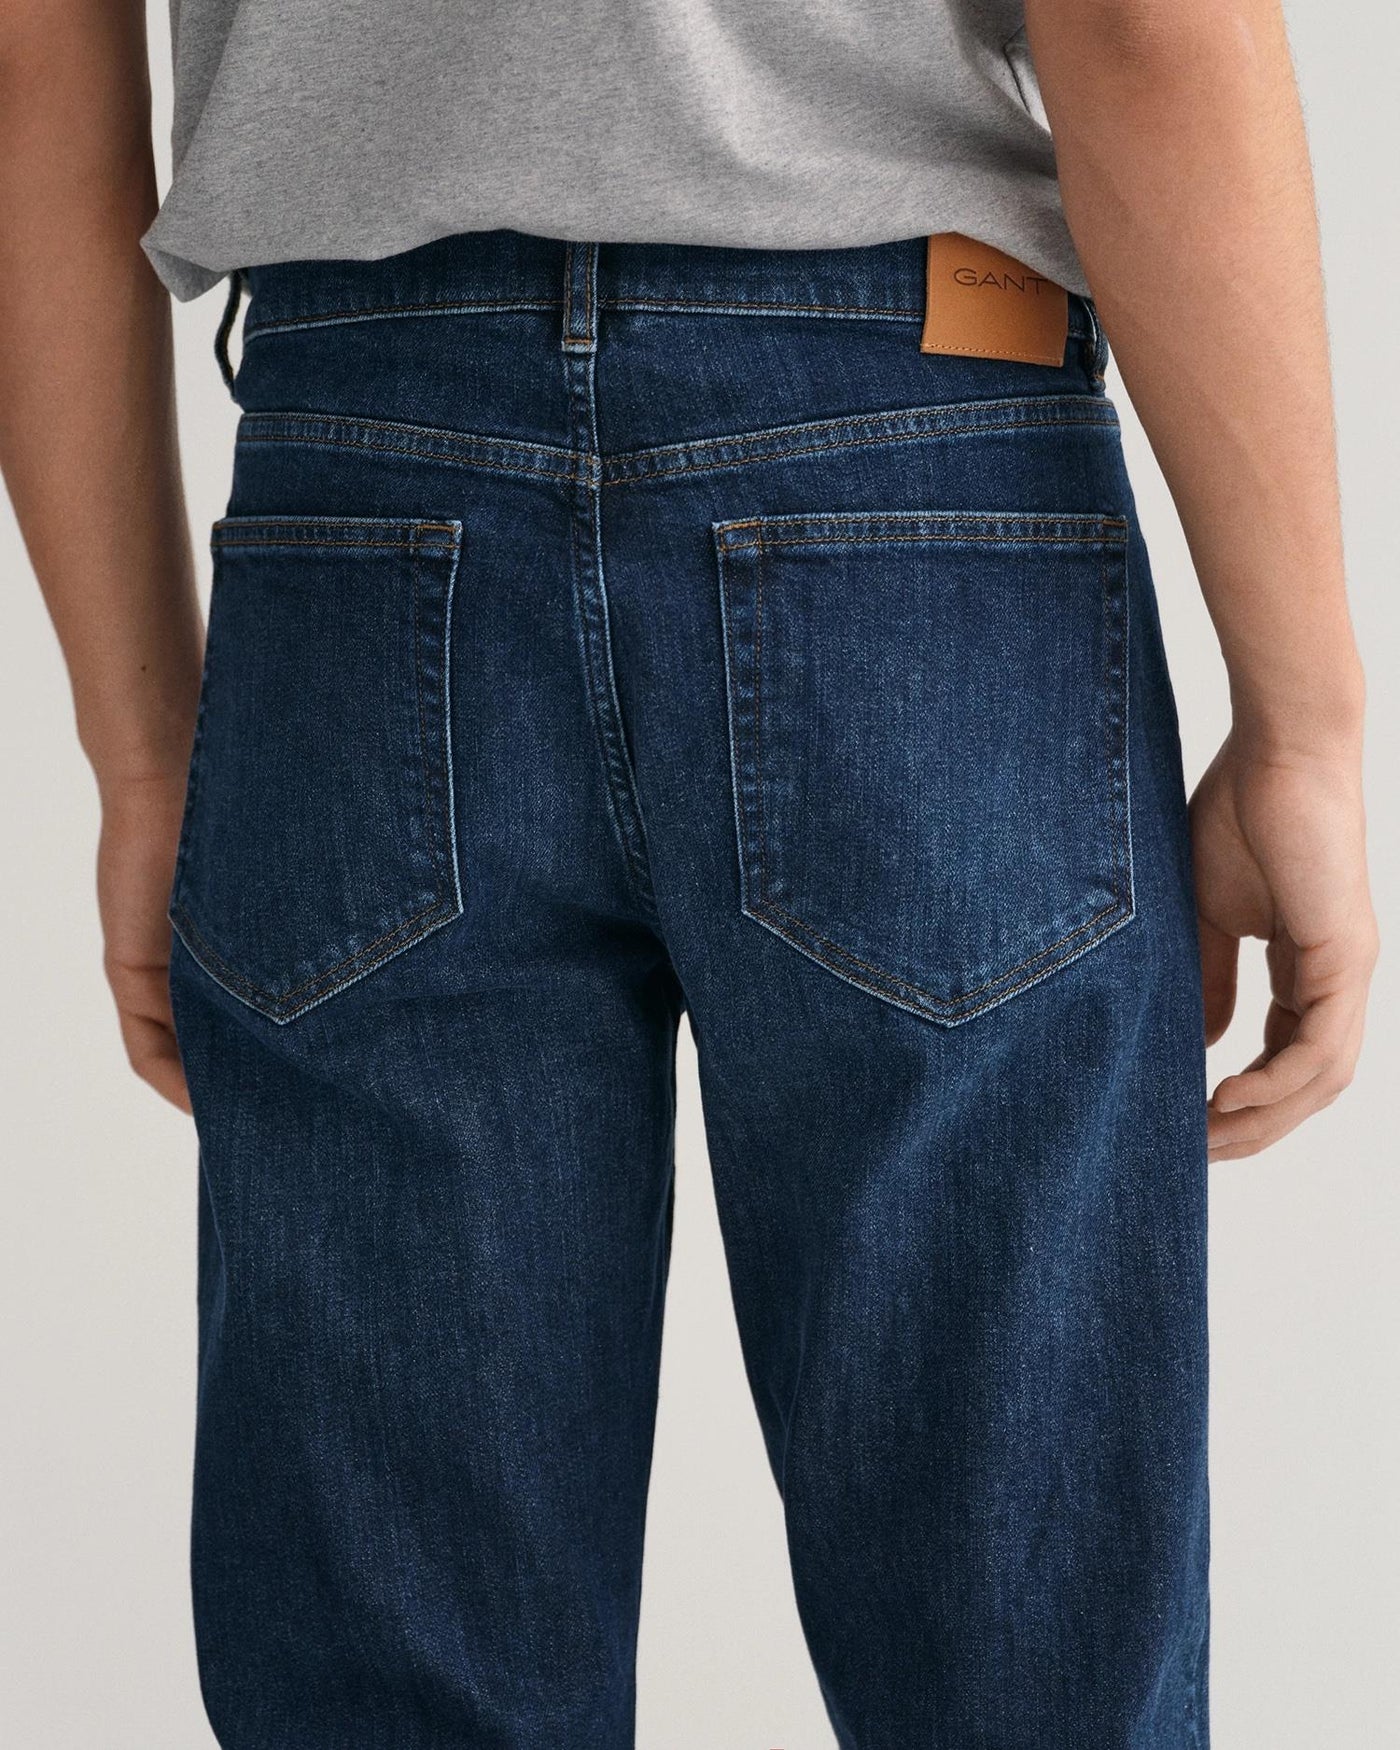 Regular Gant Jeans